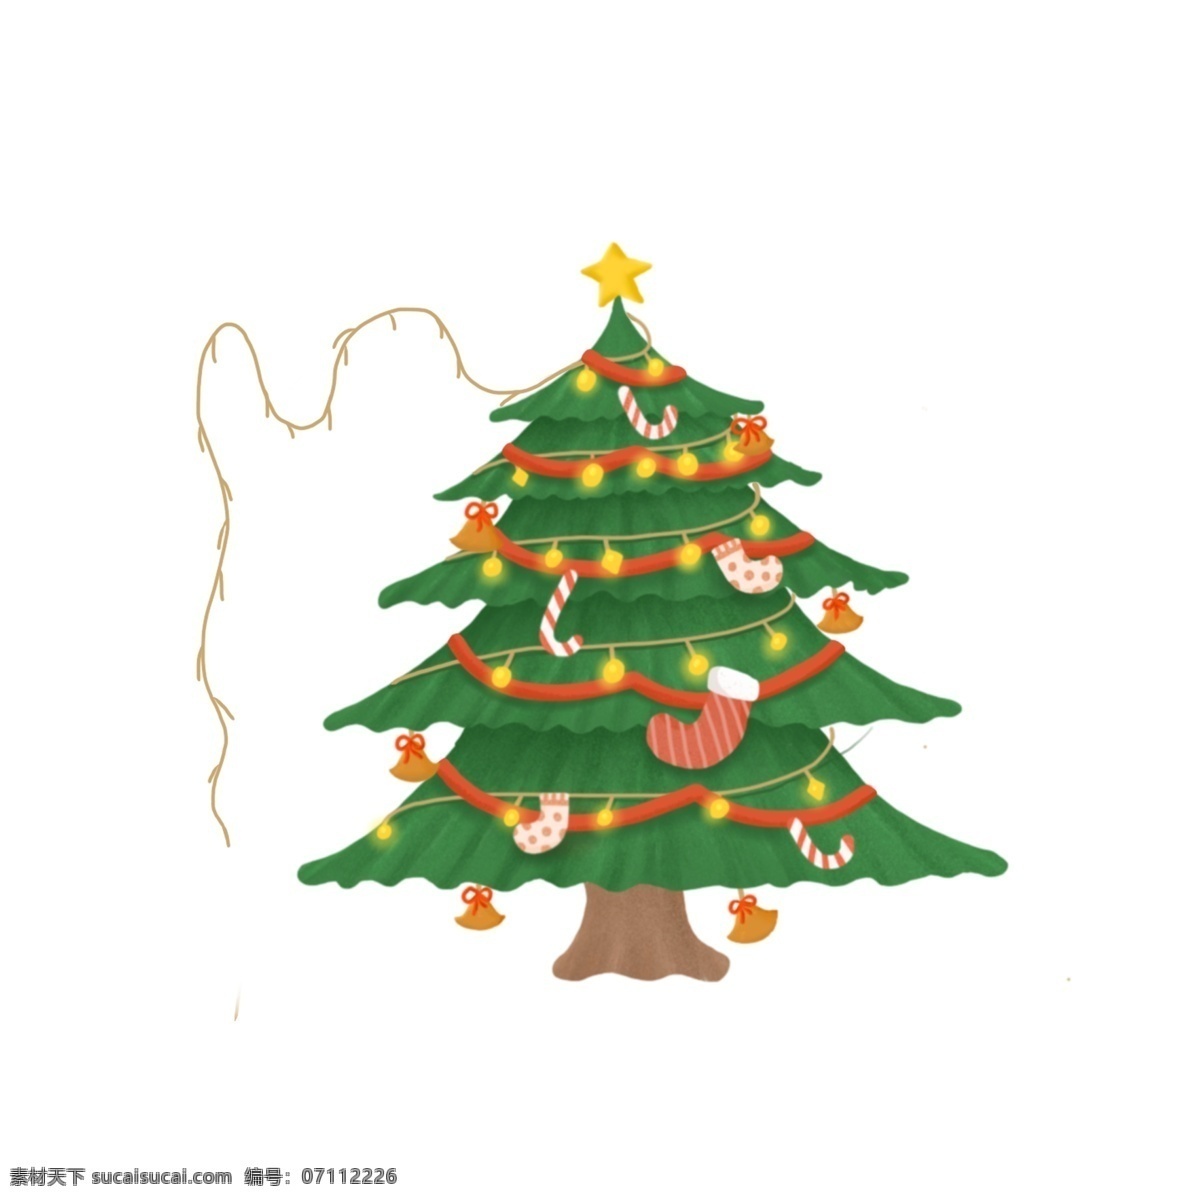 冬日 清新 圣诞树 装饰设计 圣诞节 装饰 星星 彩带 手绘 冬季 挂件 袜子 树木 植物